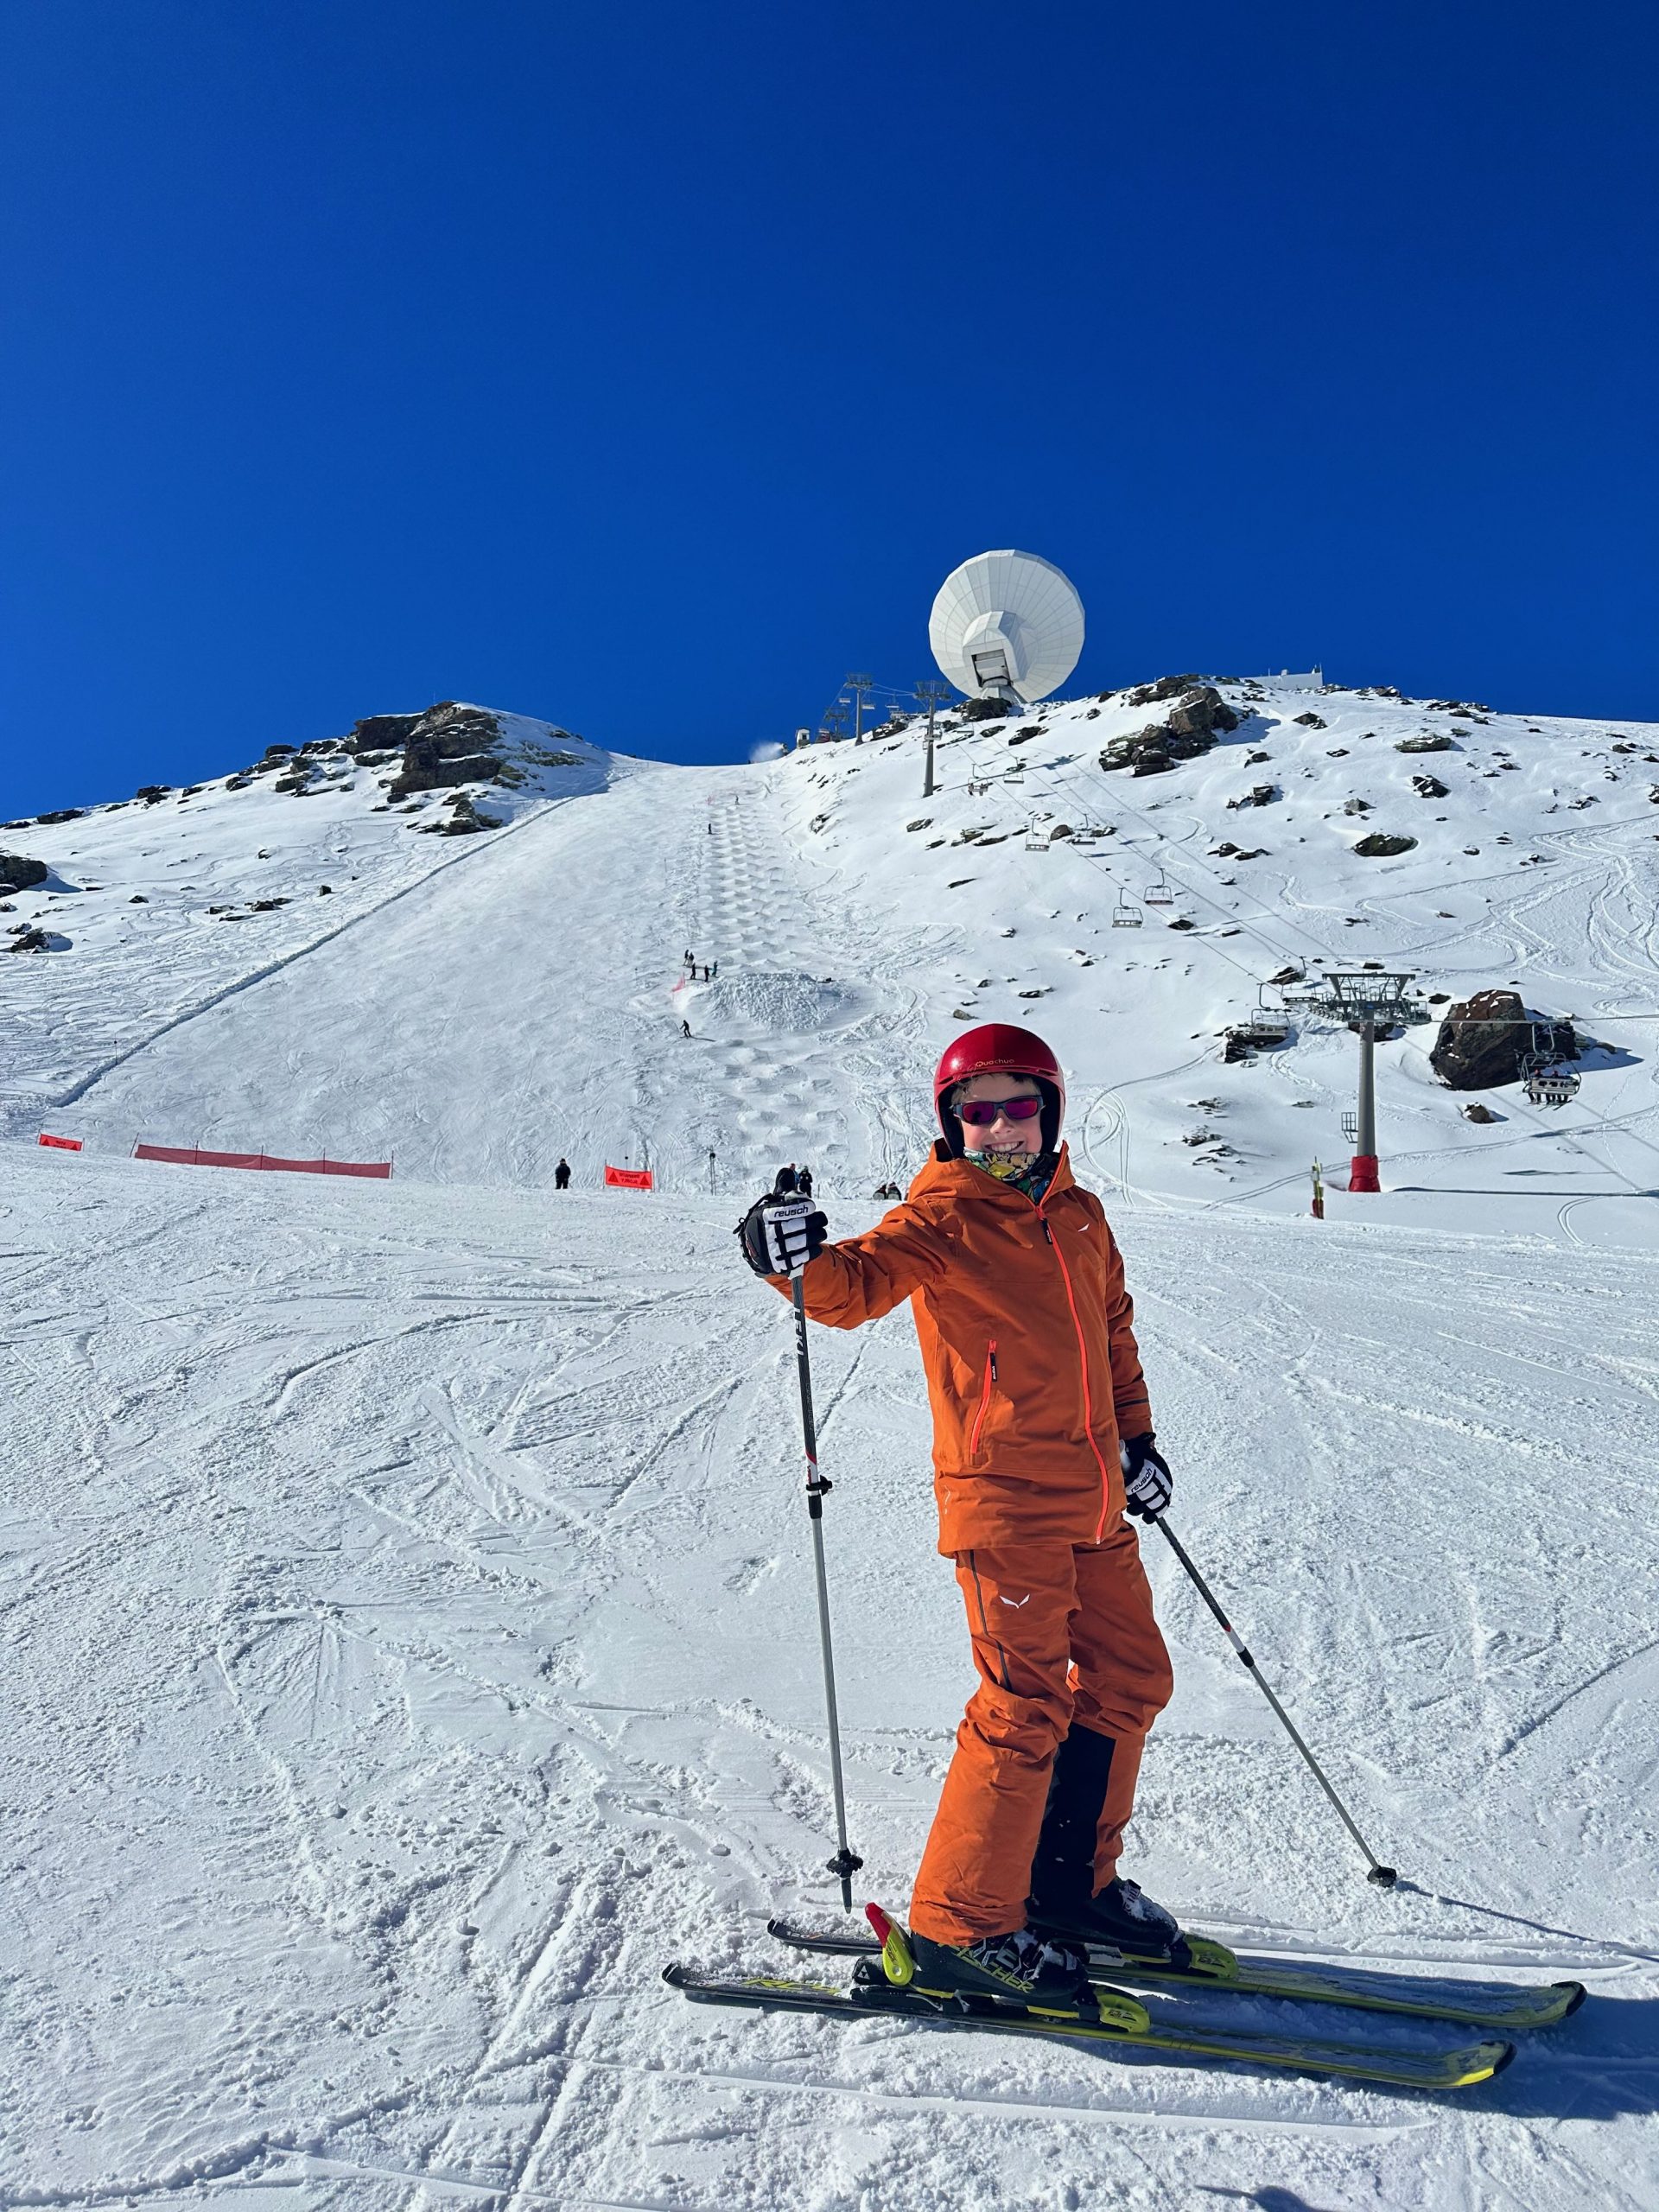 Cursos de Esquí Alpino y Fuera de Pista